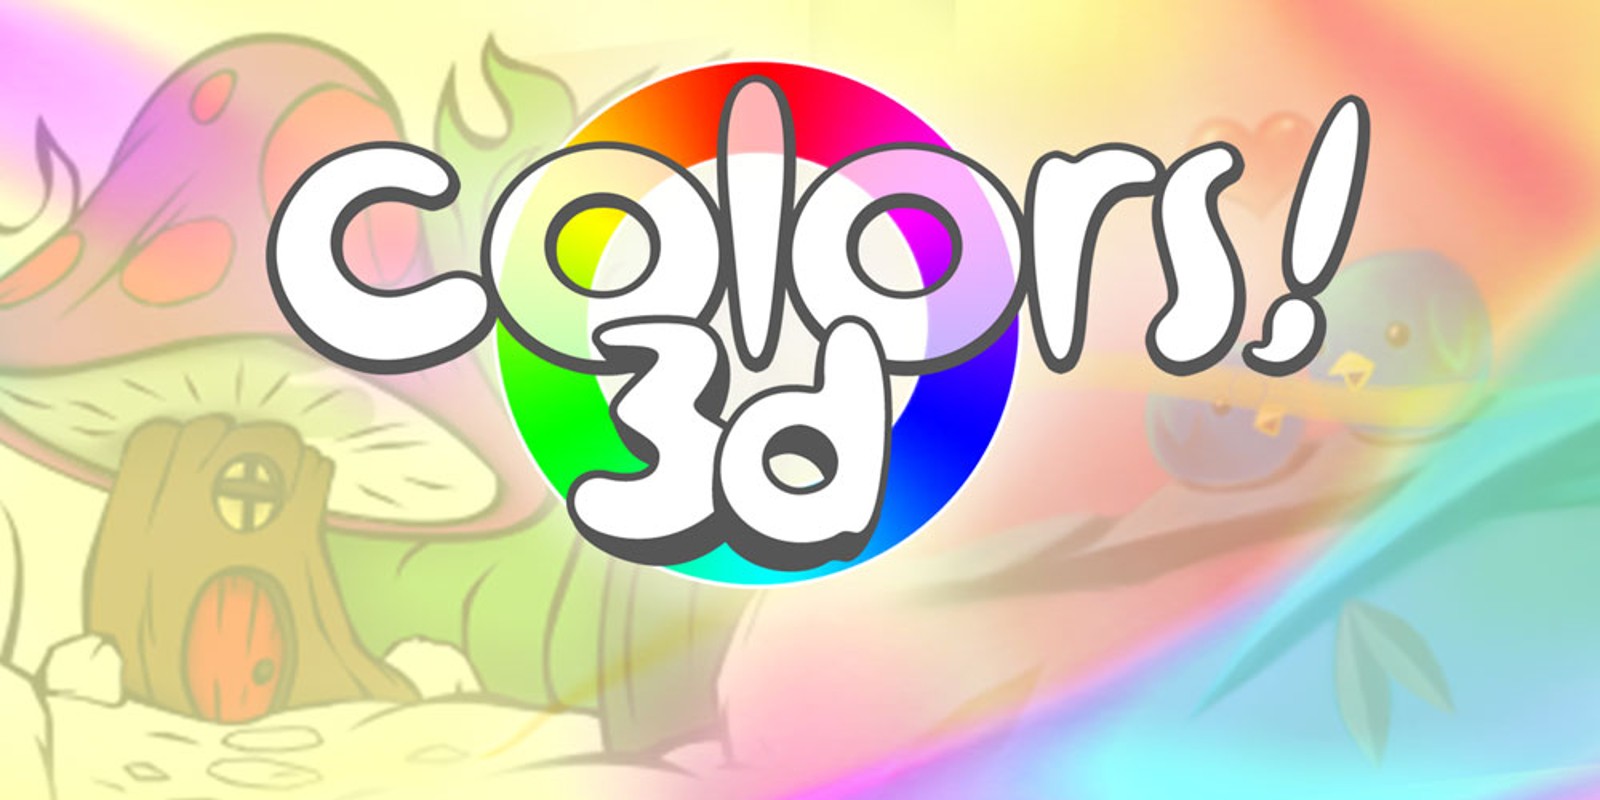 Colors! 3D | Programas descargables Nintendo 3DS | Juegos ...